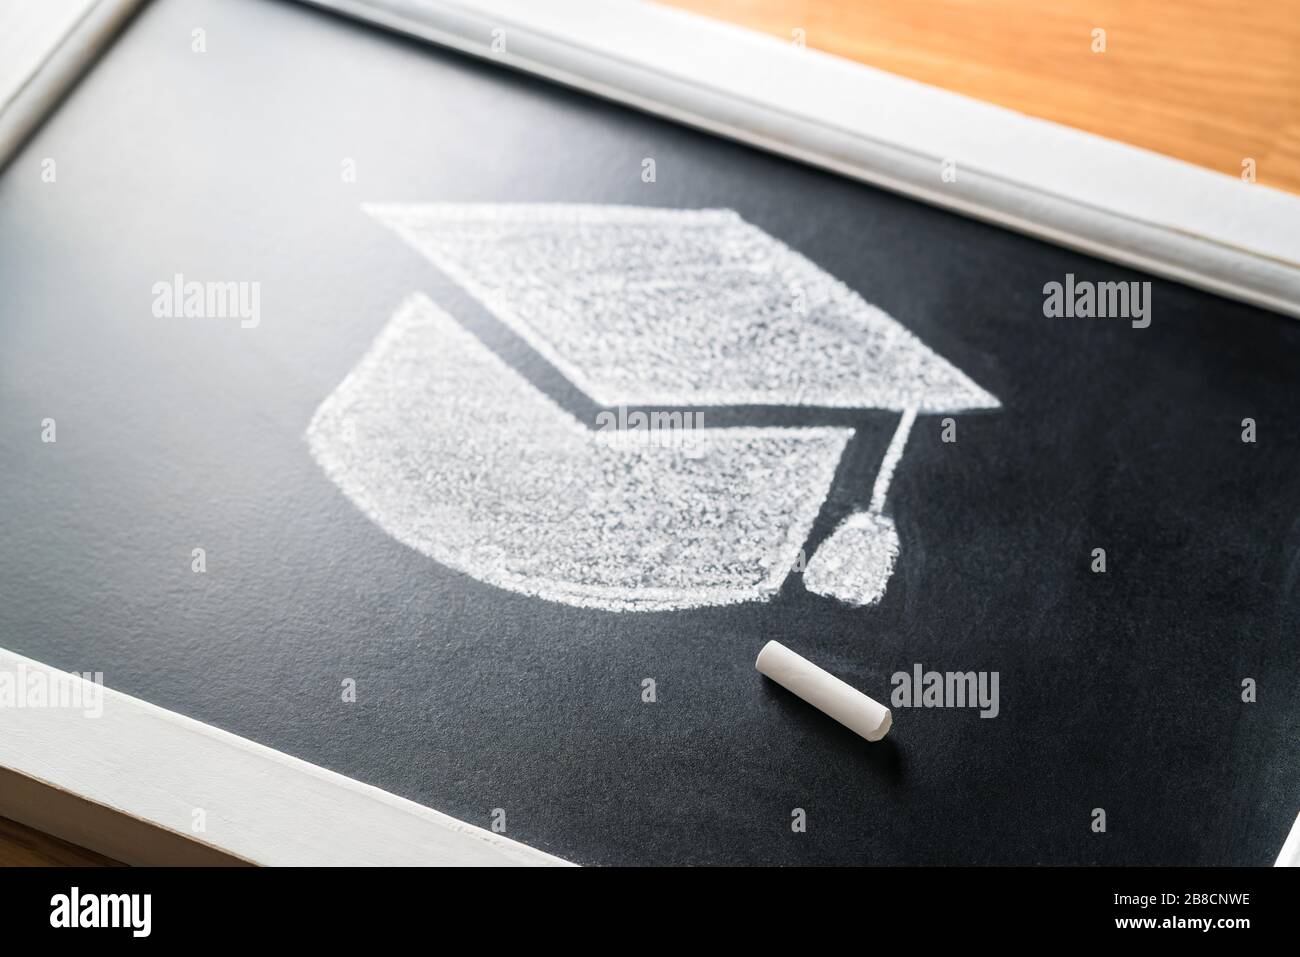 Chapeau de graduation dessiné sur tableau noir avec craie. Application au concept d'université ou d'université. Éducation traditionnelle. Étudier ou enseigner en classe. Banque D'Images